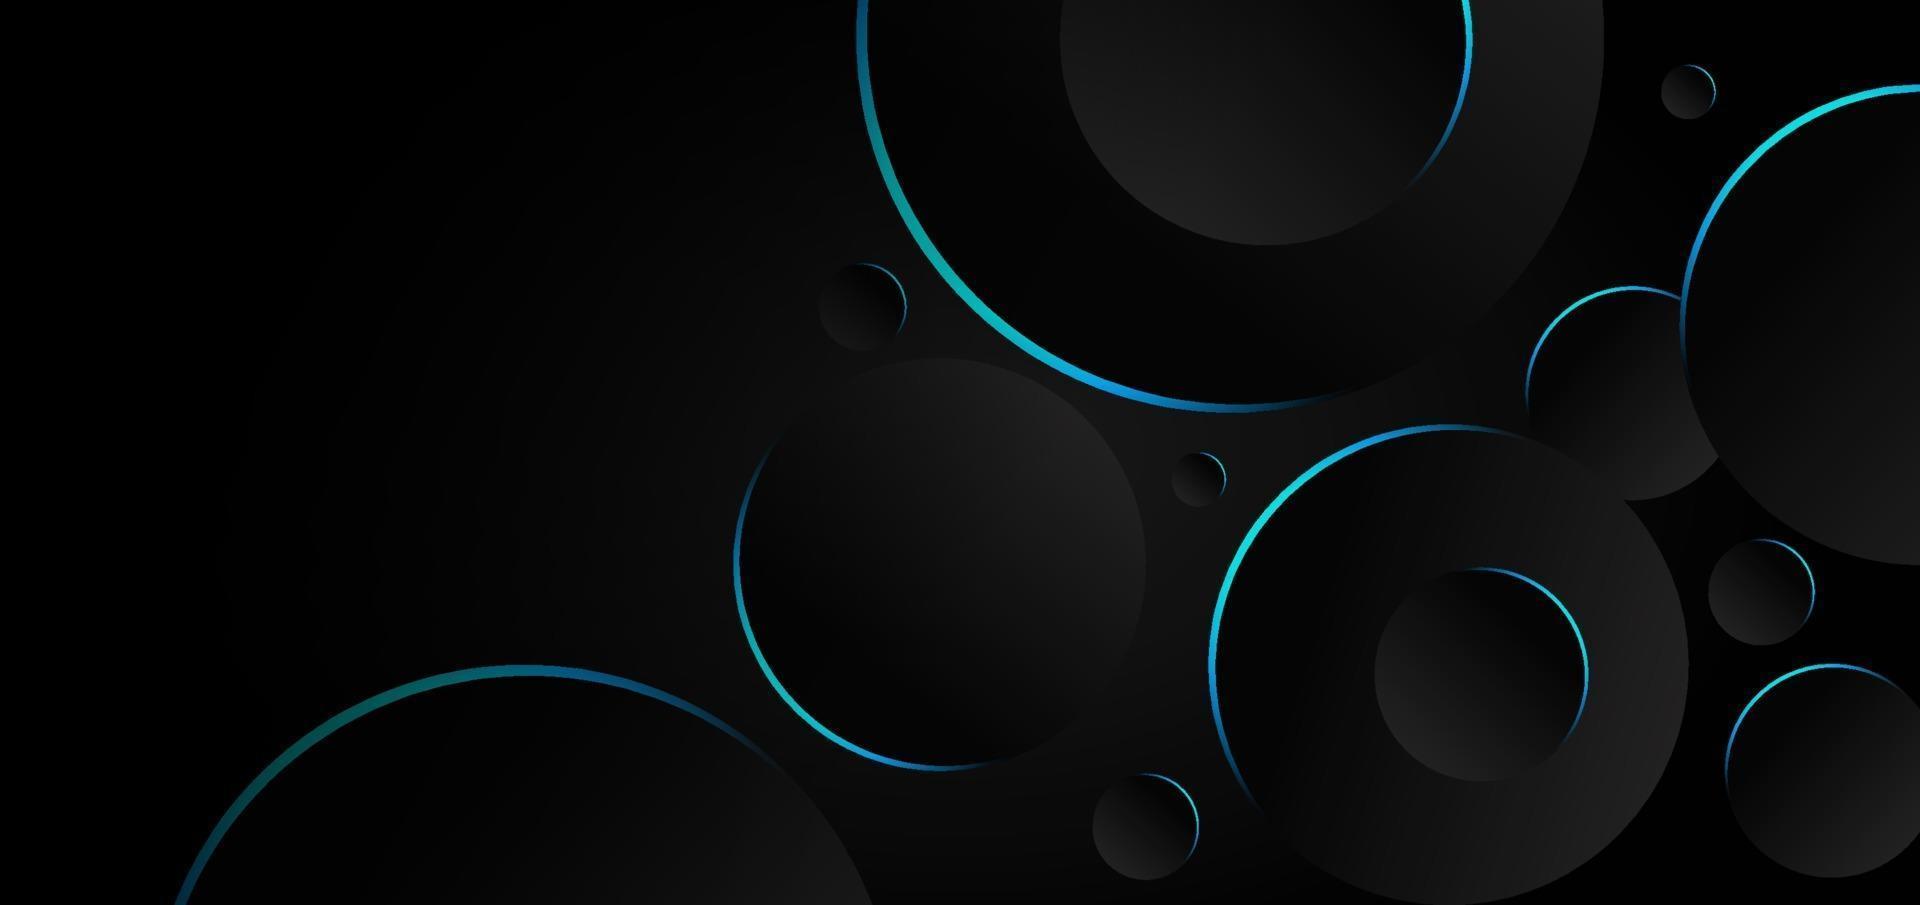 círculos abstratos de preto e cinza sobrepondo a borda de néon azul do fundo. vetor